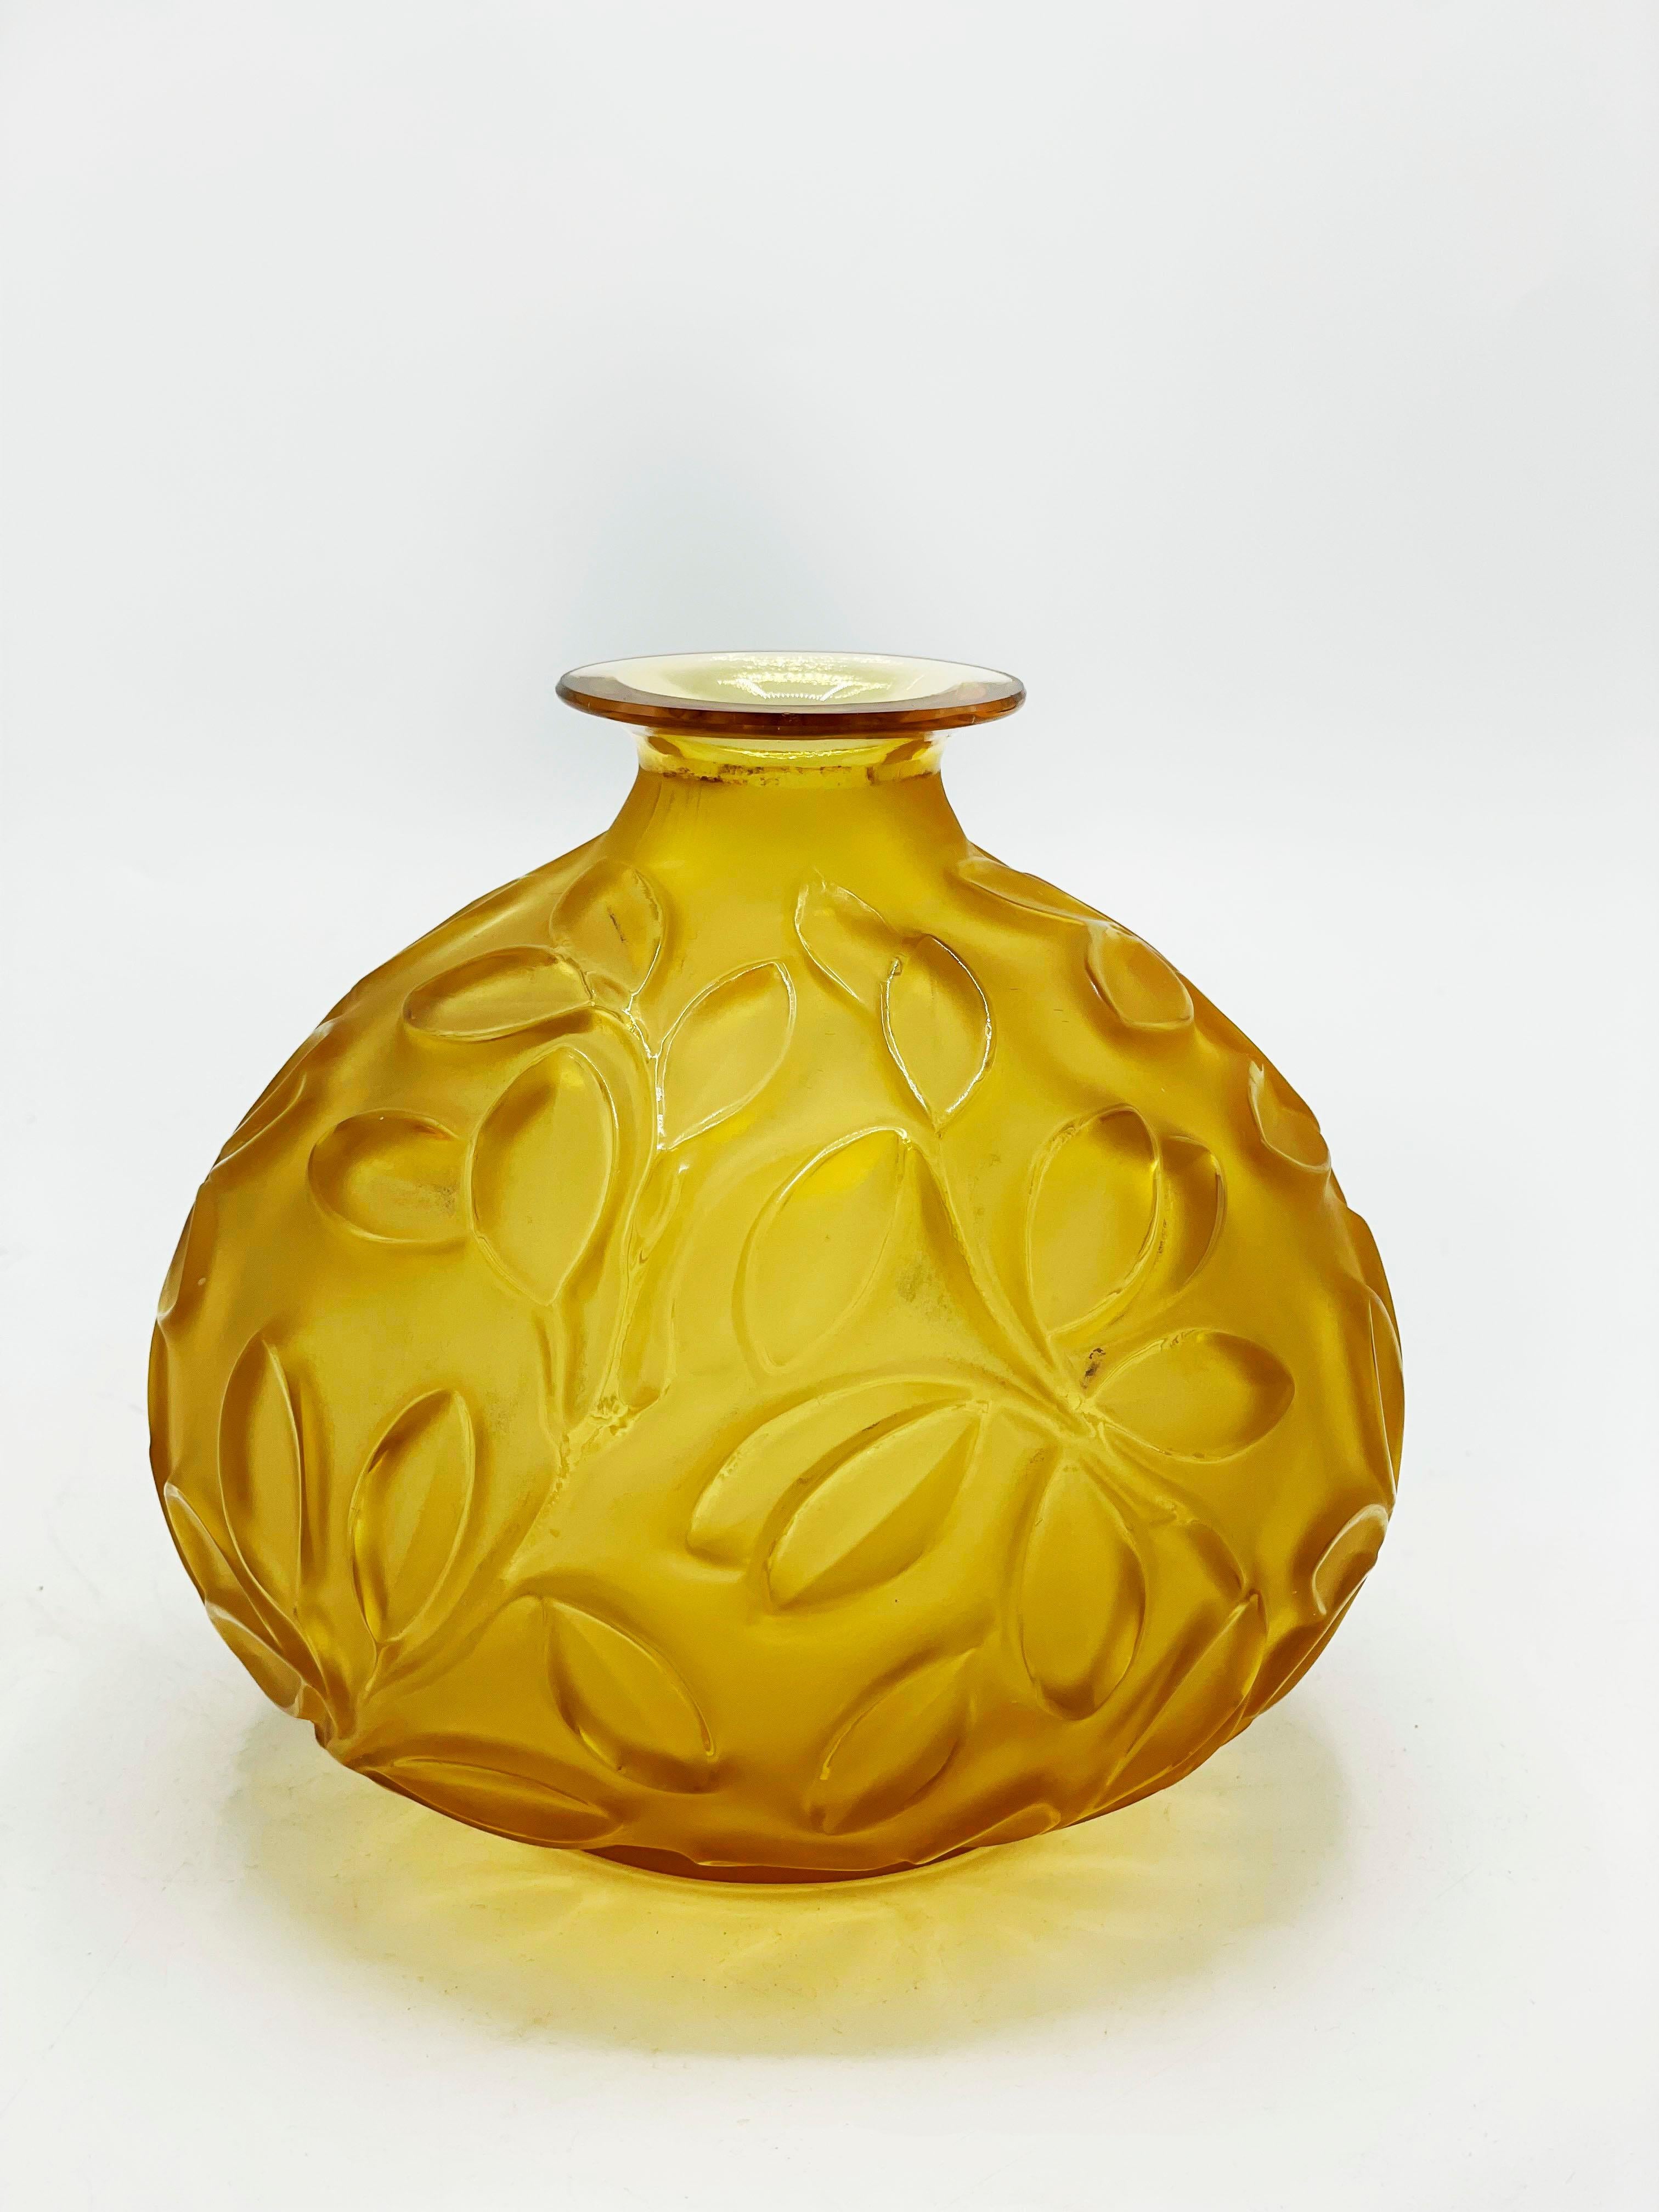 Vase en verre Art déco Sabino
Magnifique vase Sabino en verre jaune avec un design de Branch avec des feuilles qui le met encore plus en valeur grâce au relief.
Mesures :
Hauteur : 13 centimètre
Diamètre : 12.5 centimètres